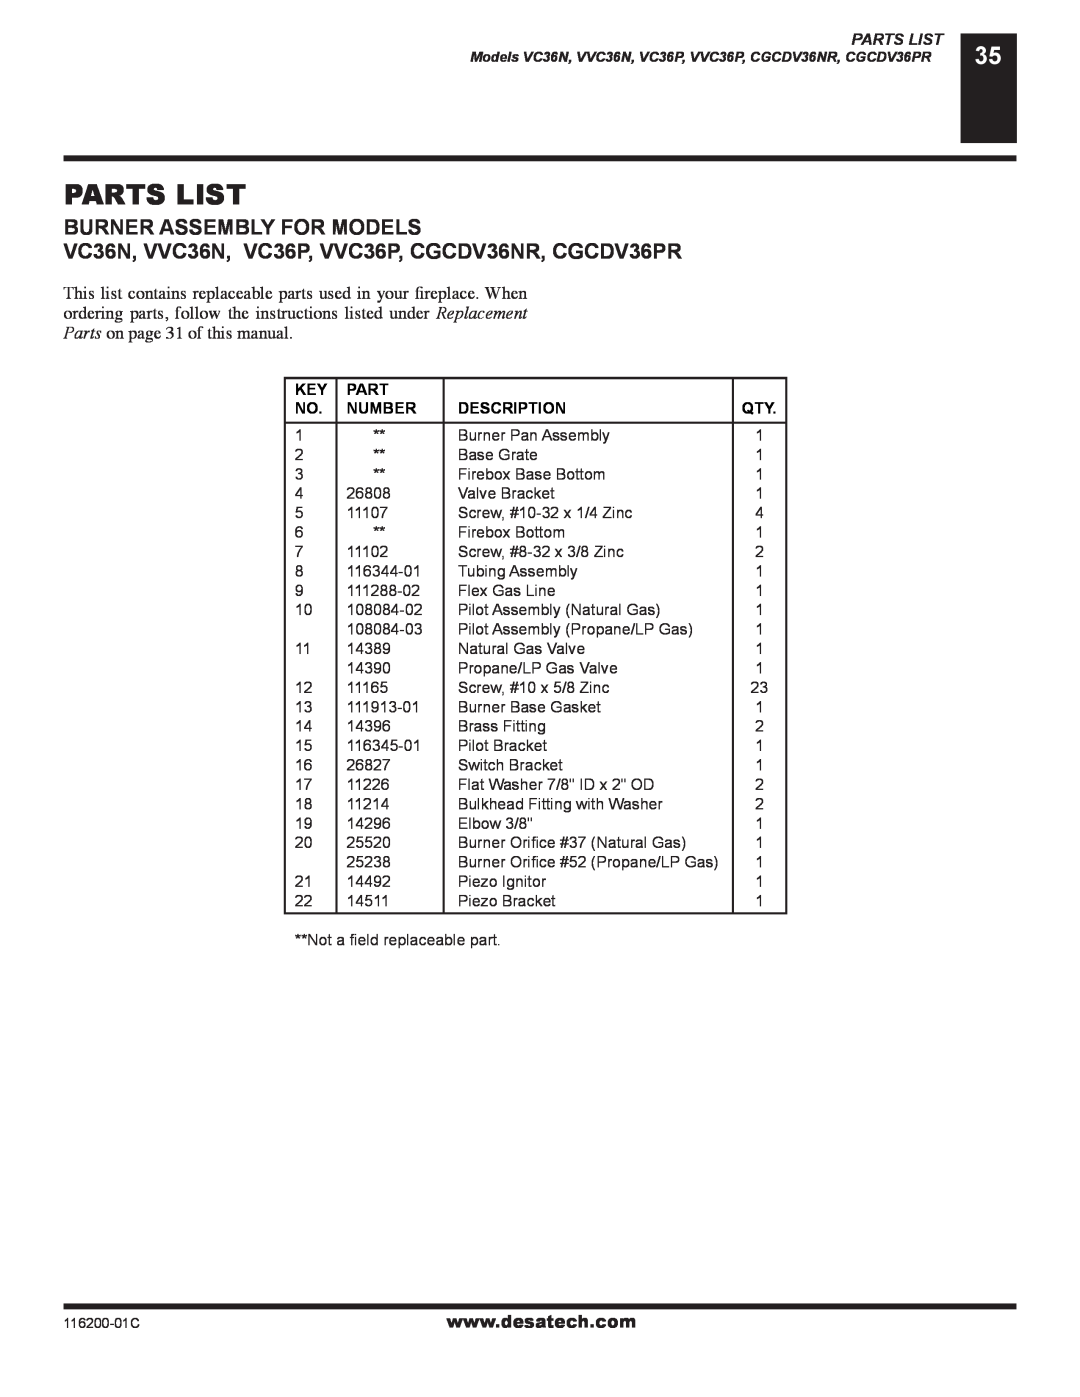 Desa VC36N, VC36P, CGCDV36NR, CGCDV36PR, (V)VC36P Parts List, Burner Assembly For Models, Burner Pan Assembly 